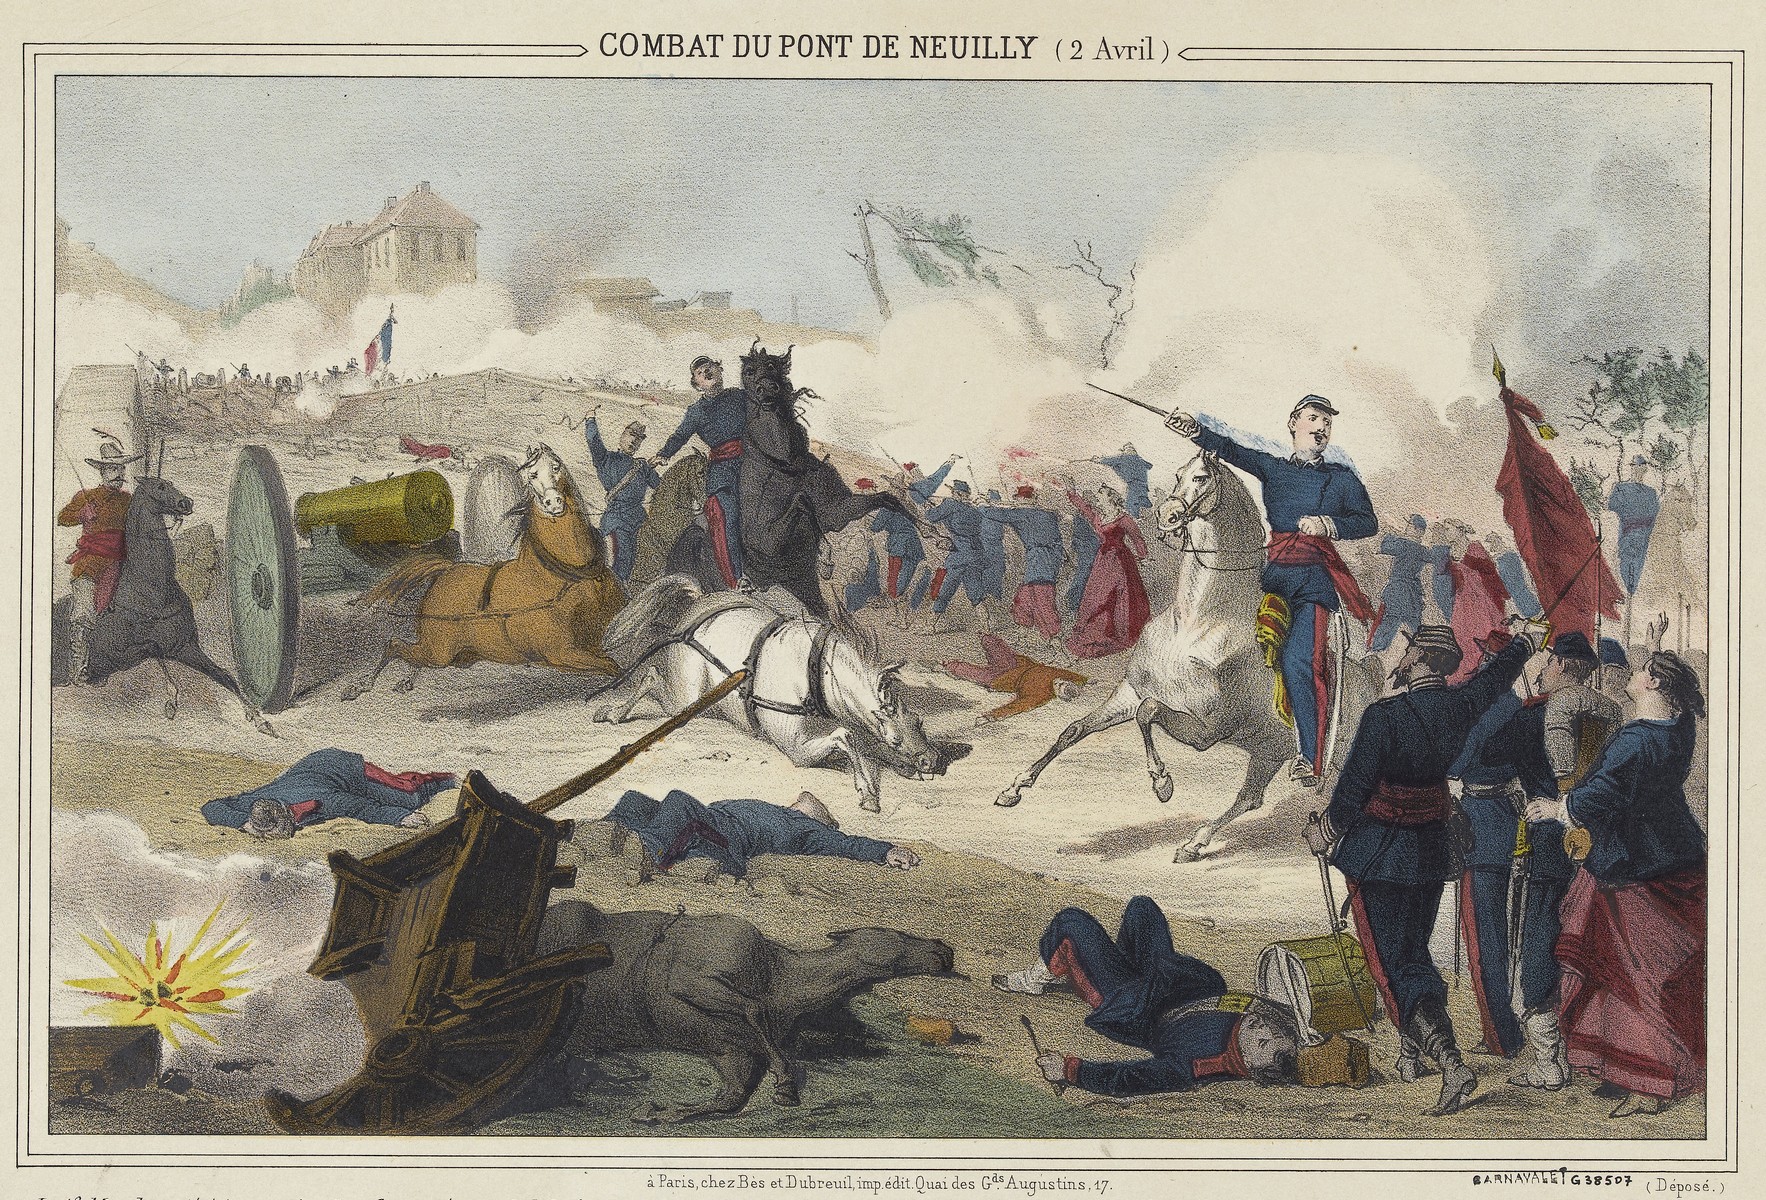 Combat du pont de Nauilly, 2 avril 1871 - Lithographie coloriée (Musée Carnavalet - Histoire de Paris)